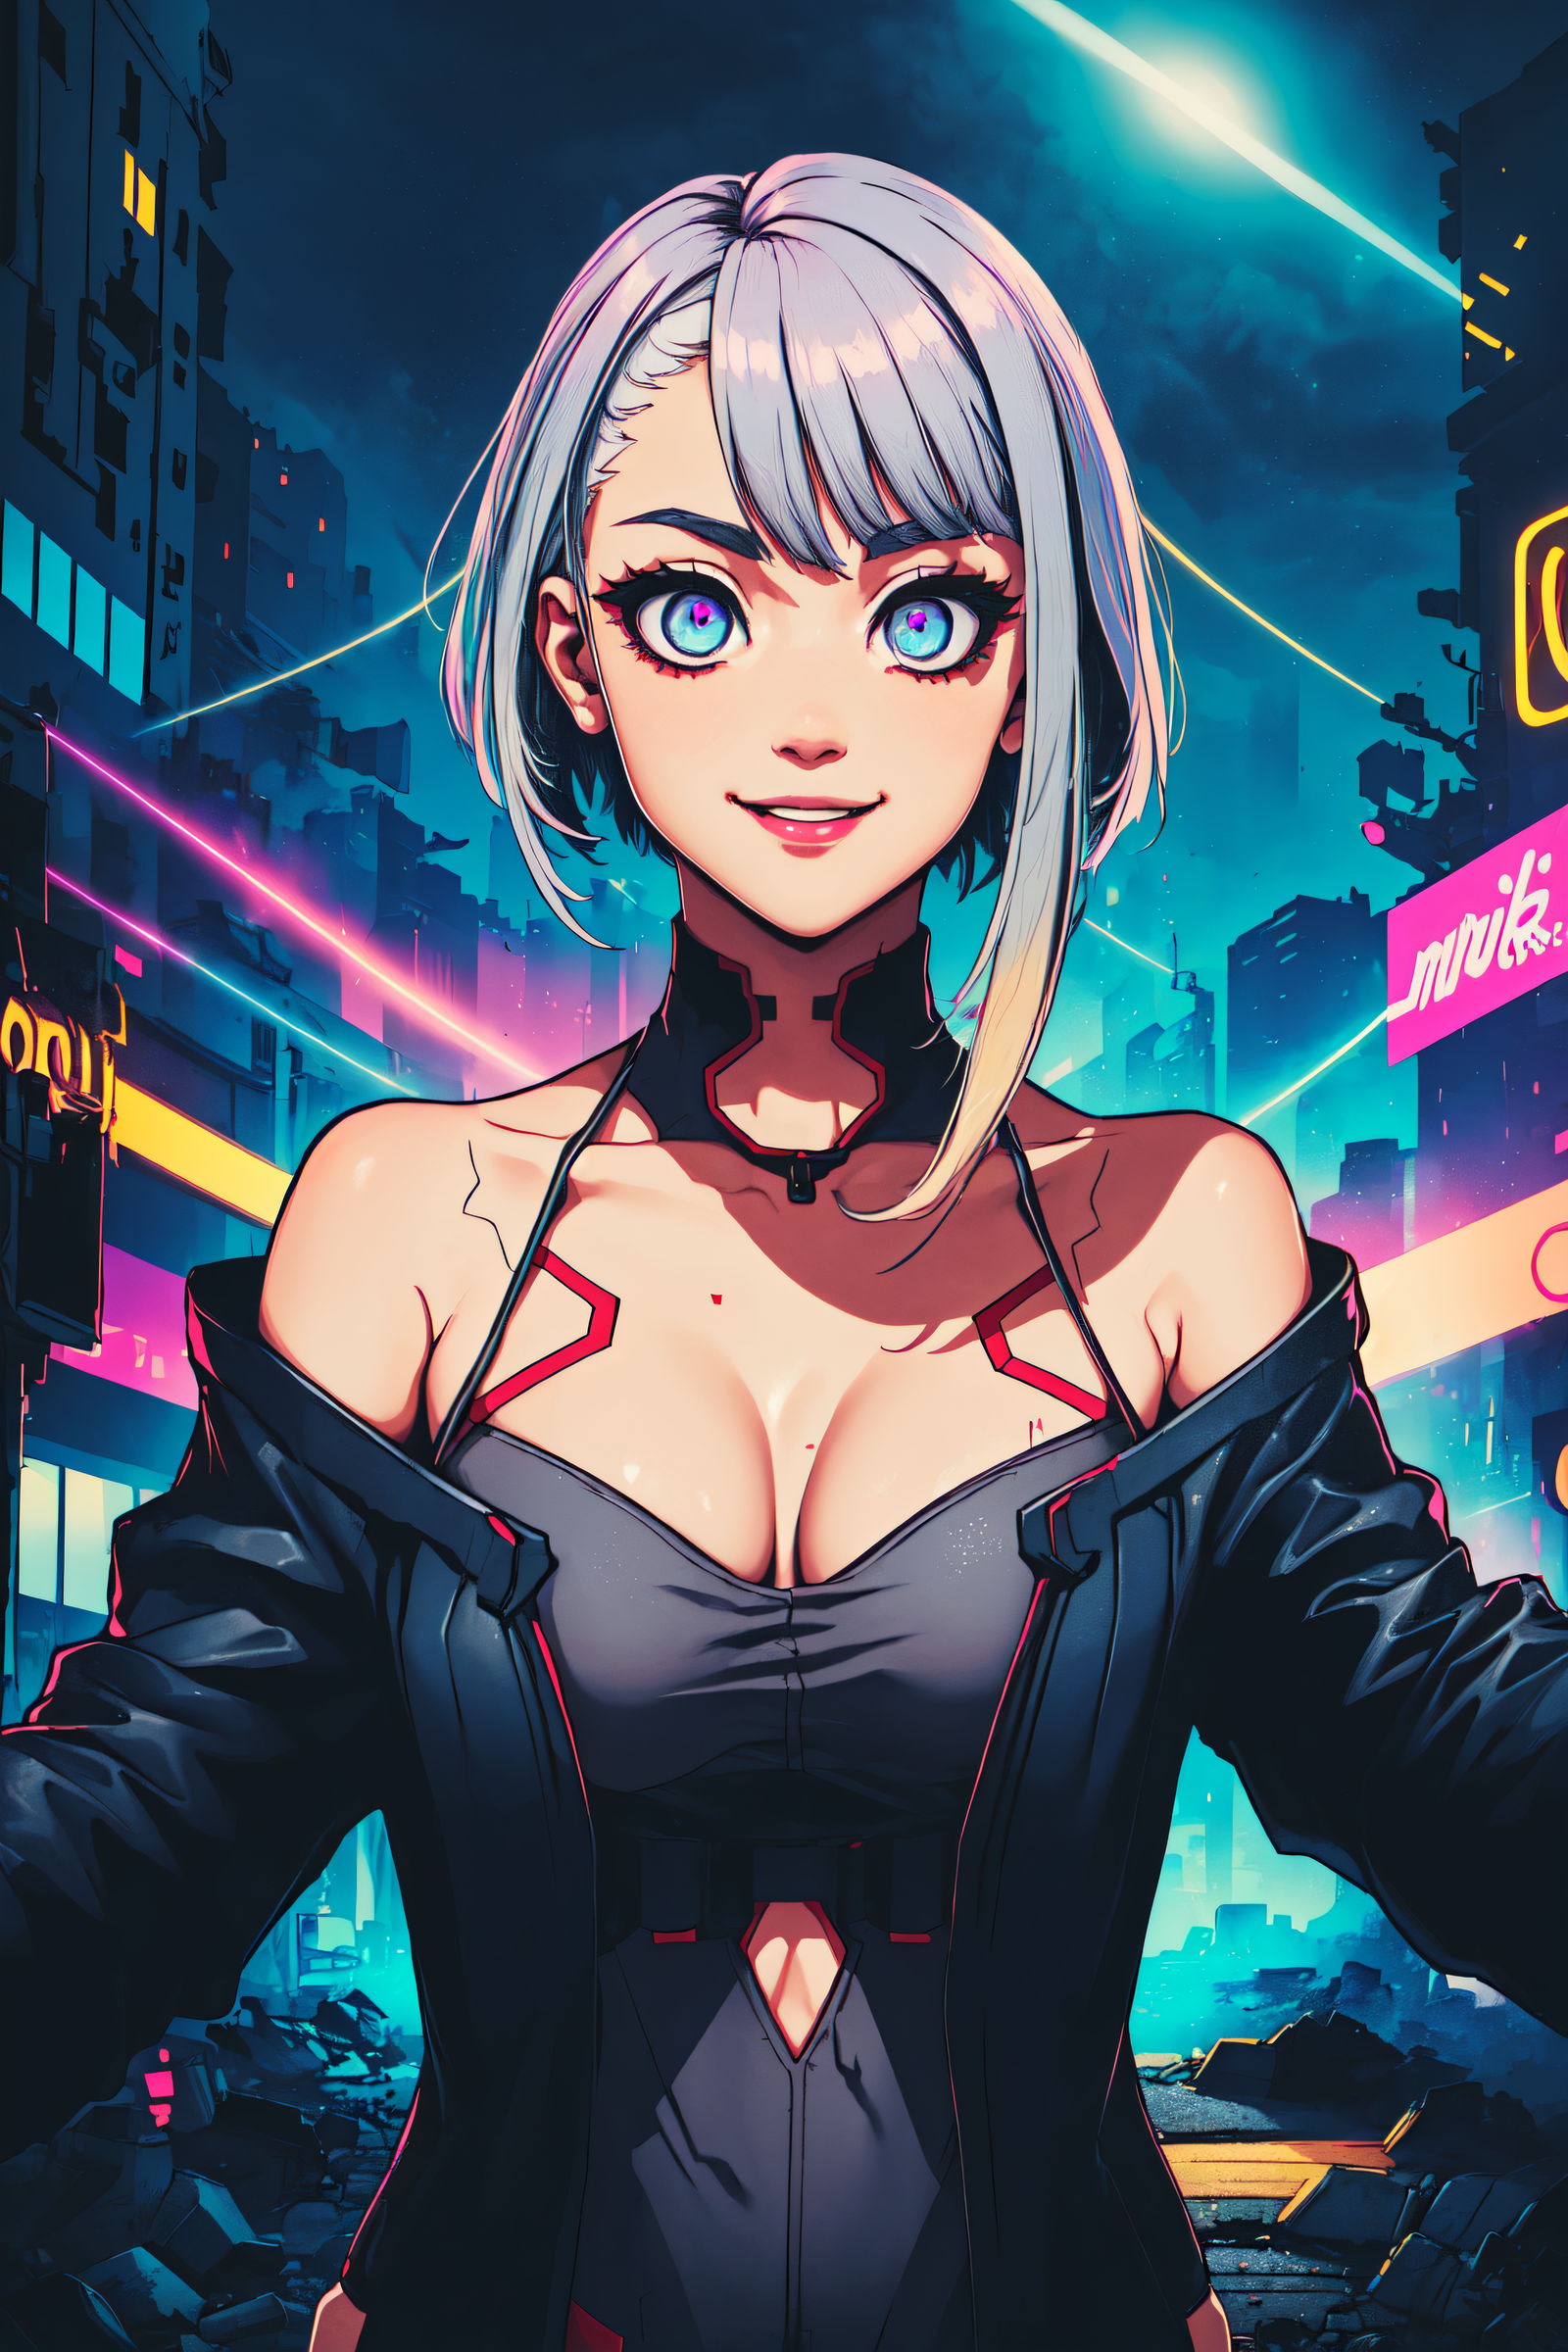 Lucy - Cyberpunk by Dantegonist on DeviantArt